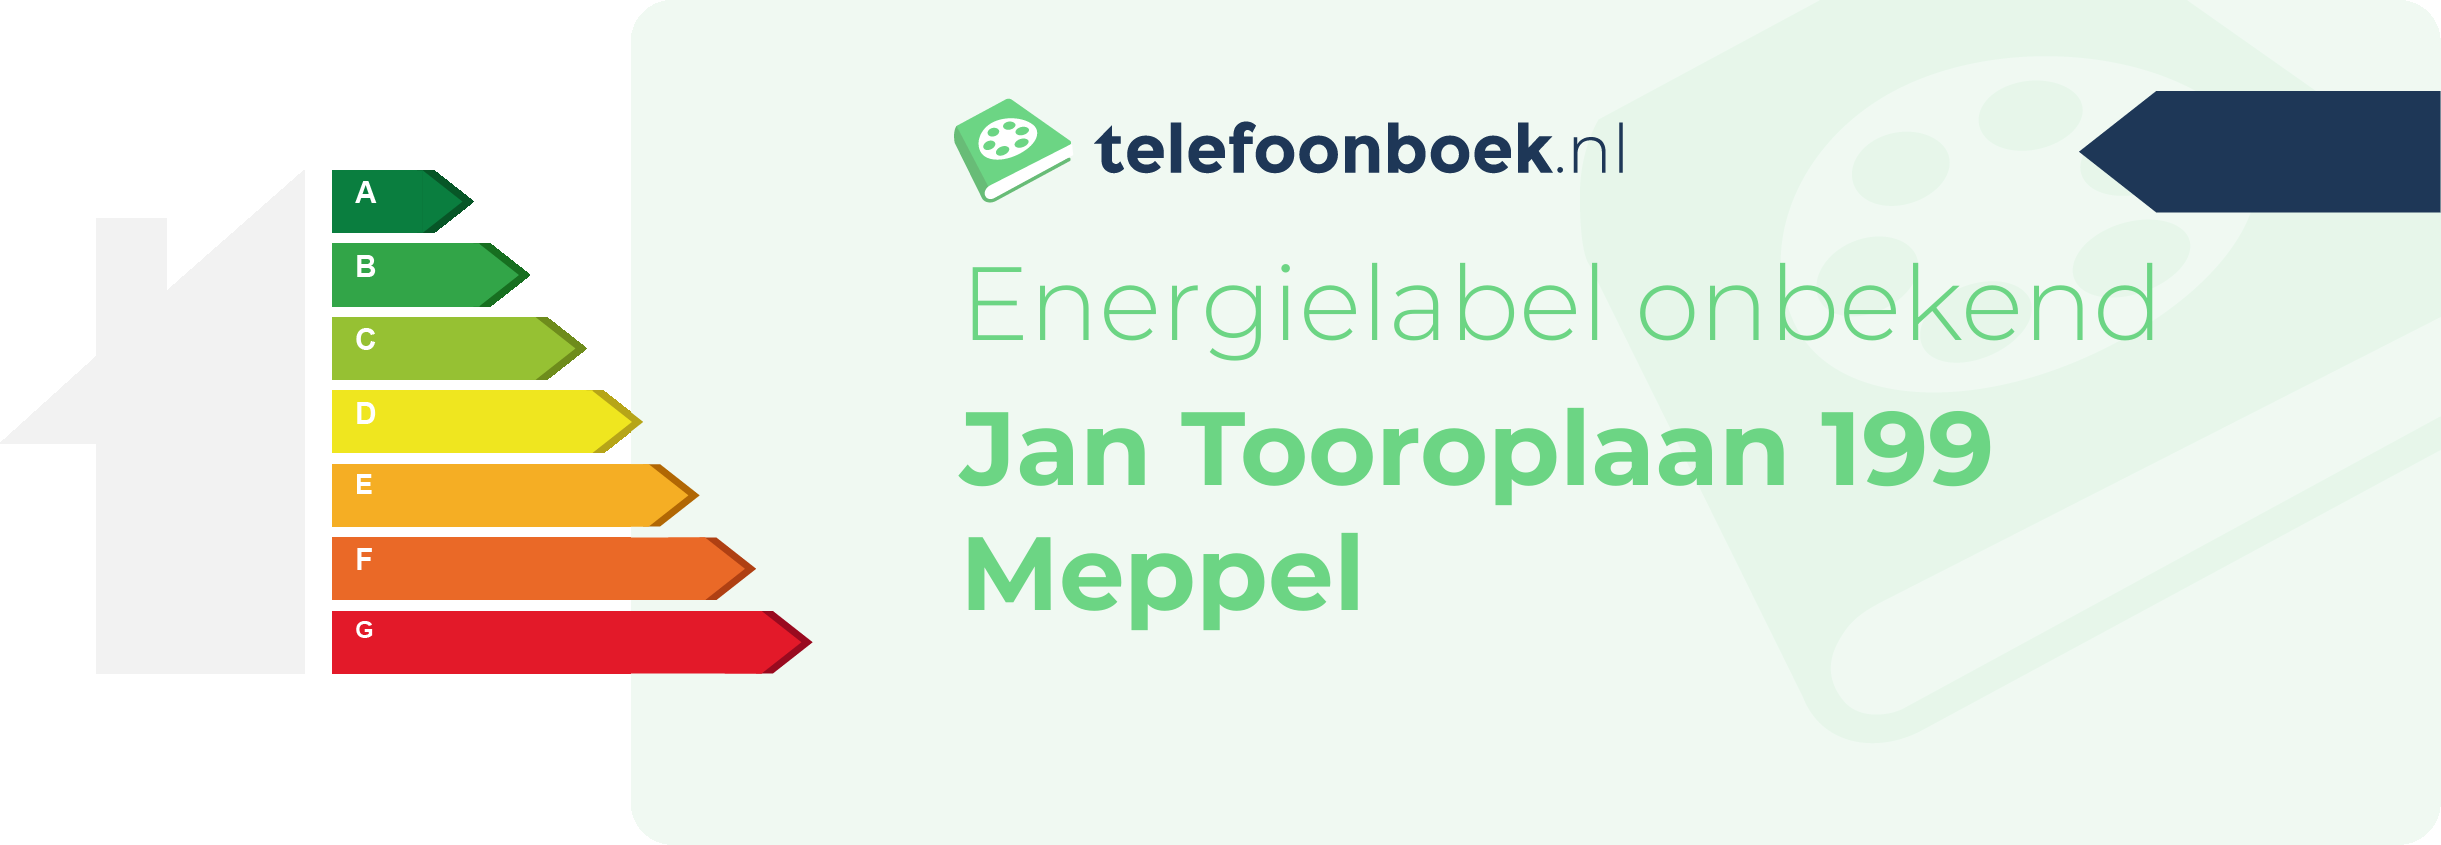 Energielabel Jan Tooroplaan 199 Meppel